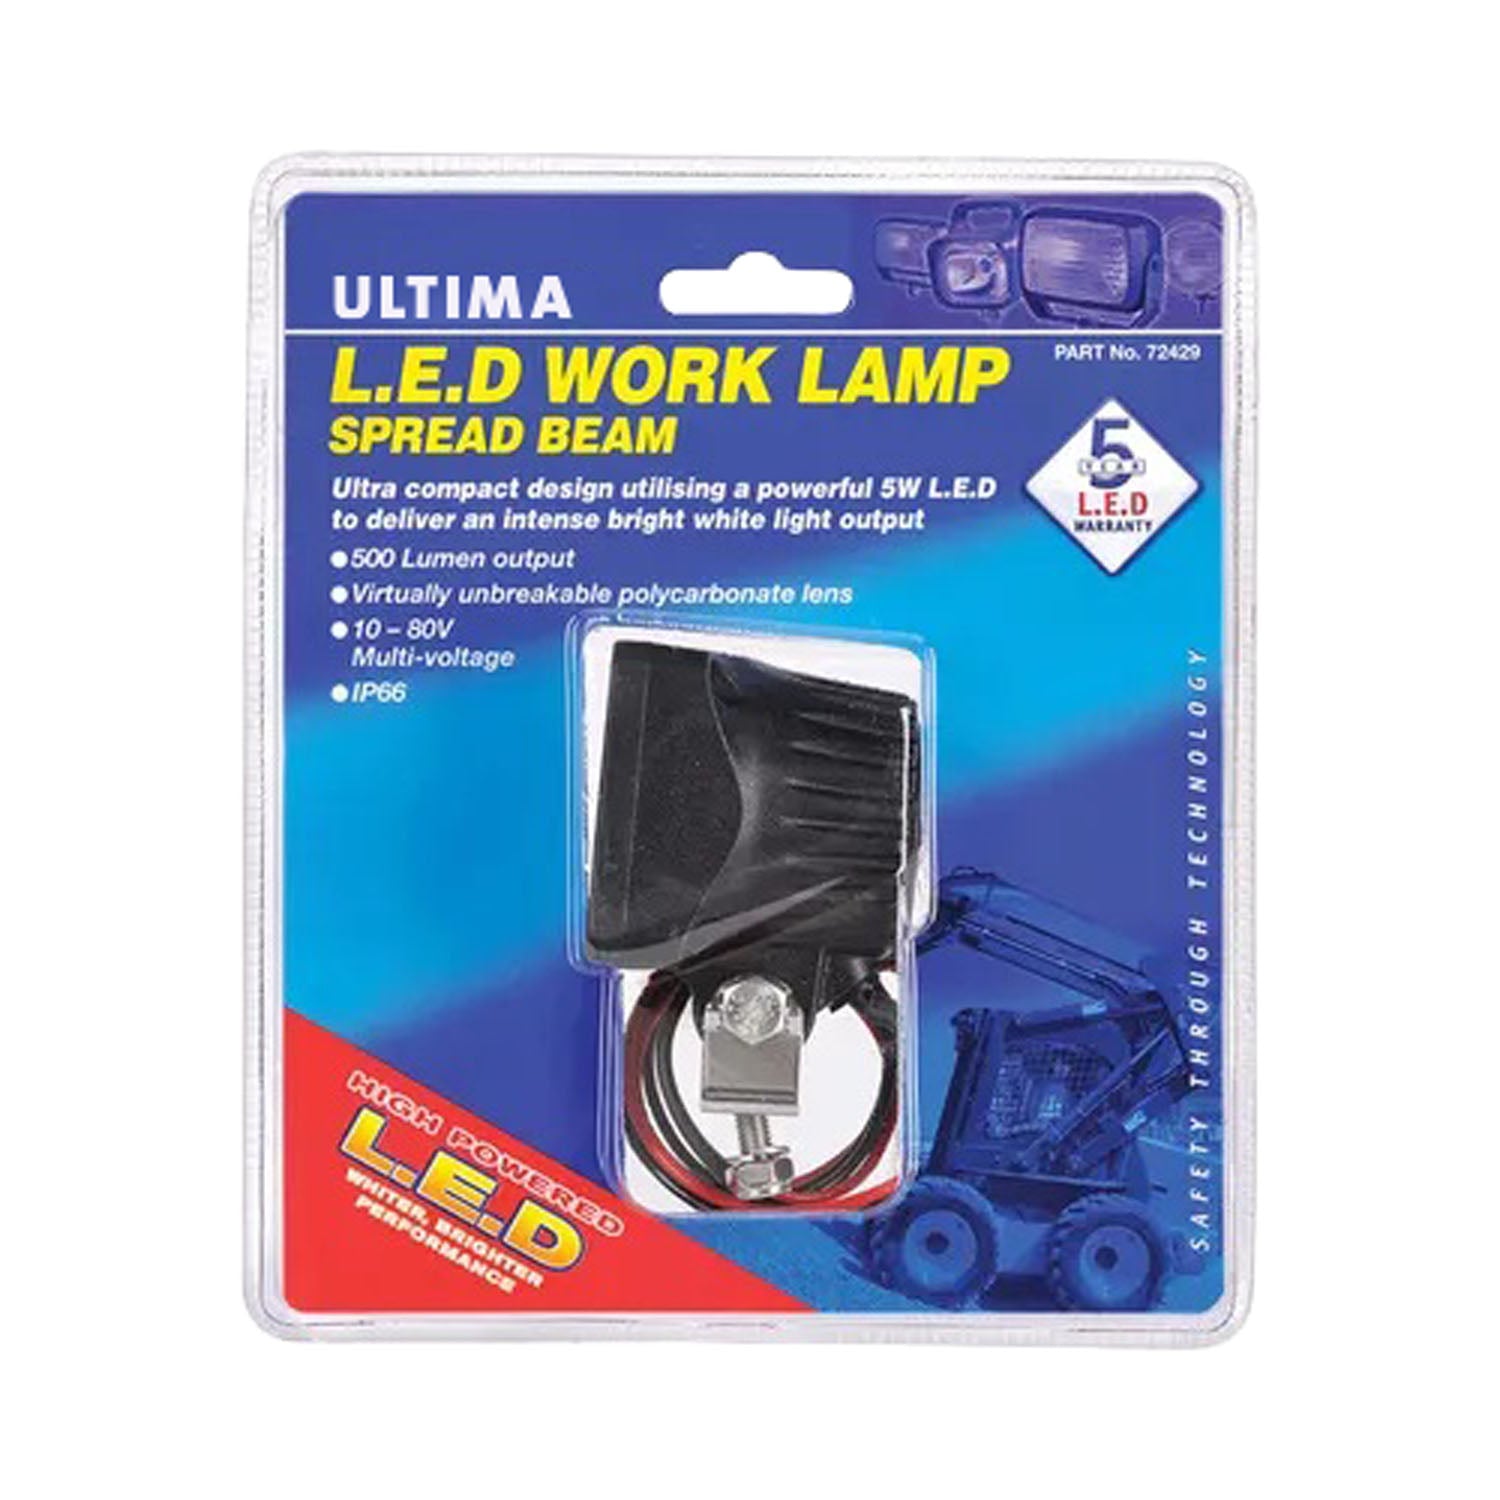 Square Work Lamp Spread Beam, 500 Lumens, Black